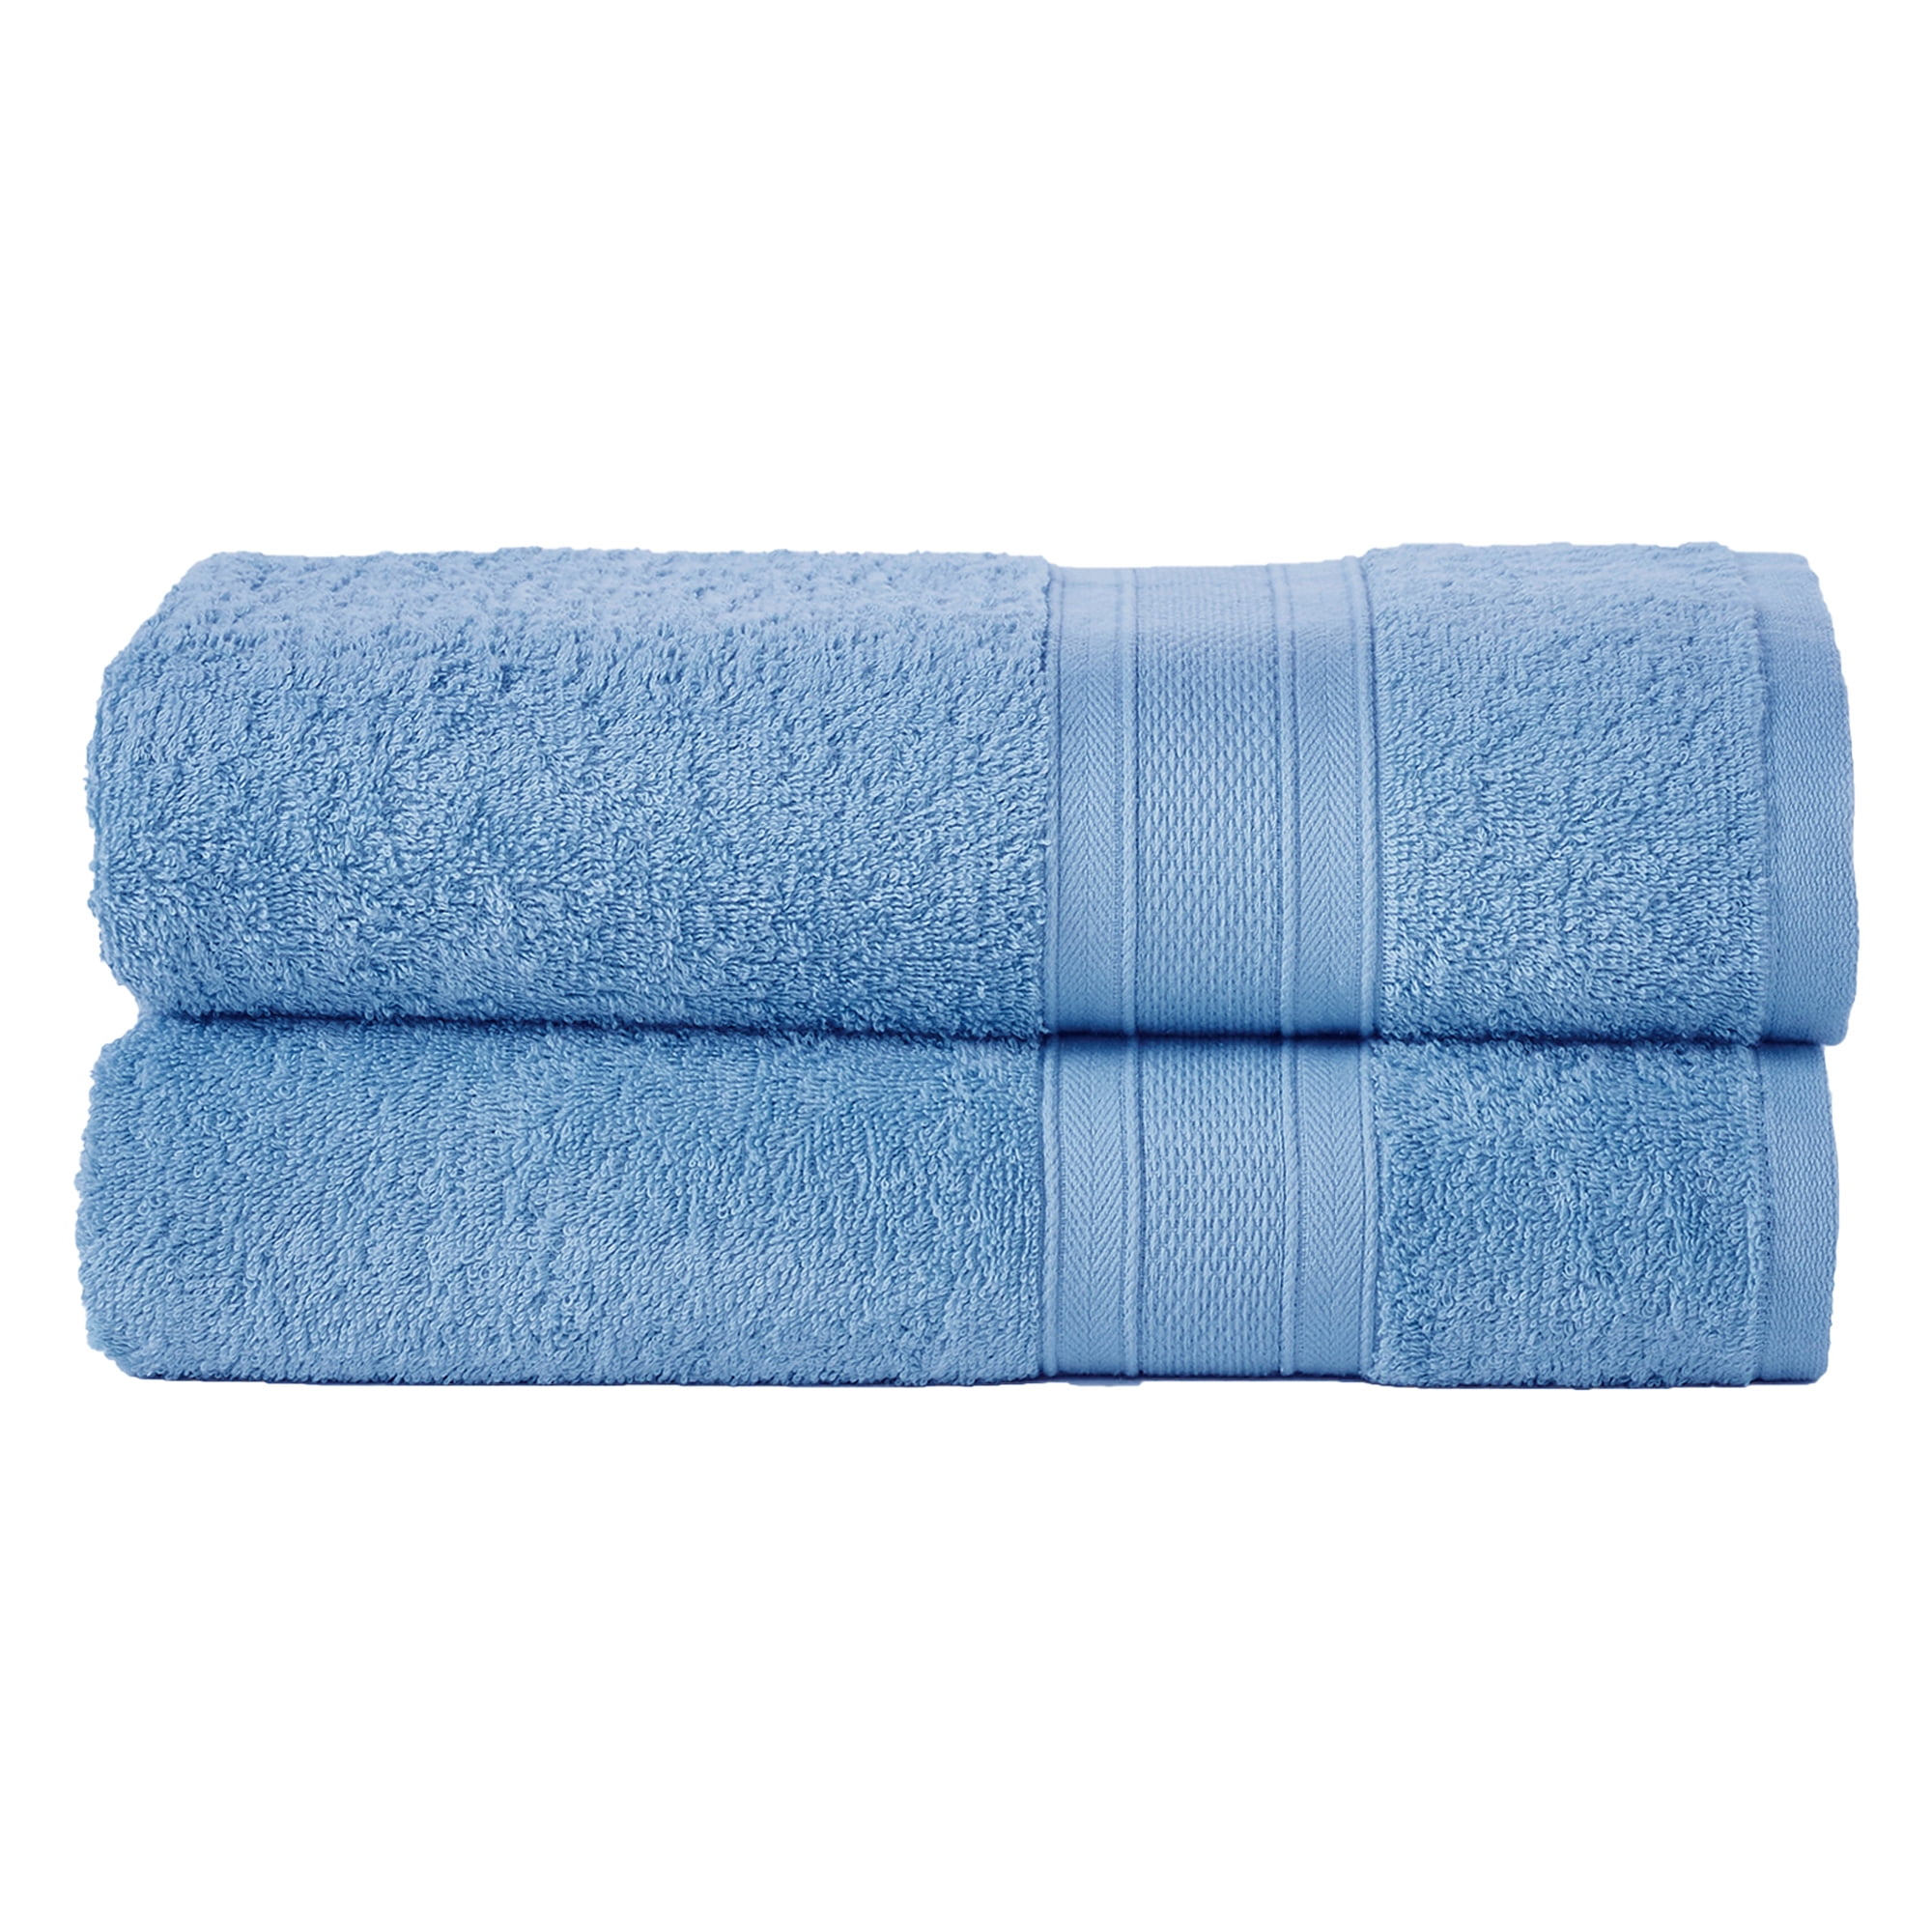 TRIDENT Cotton 500 GSM Bath Towel Set - Buy TRIDENT Cotton 500 GSM